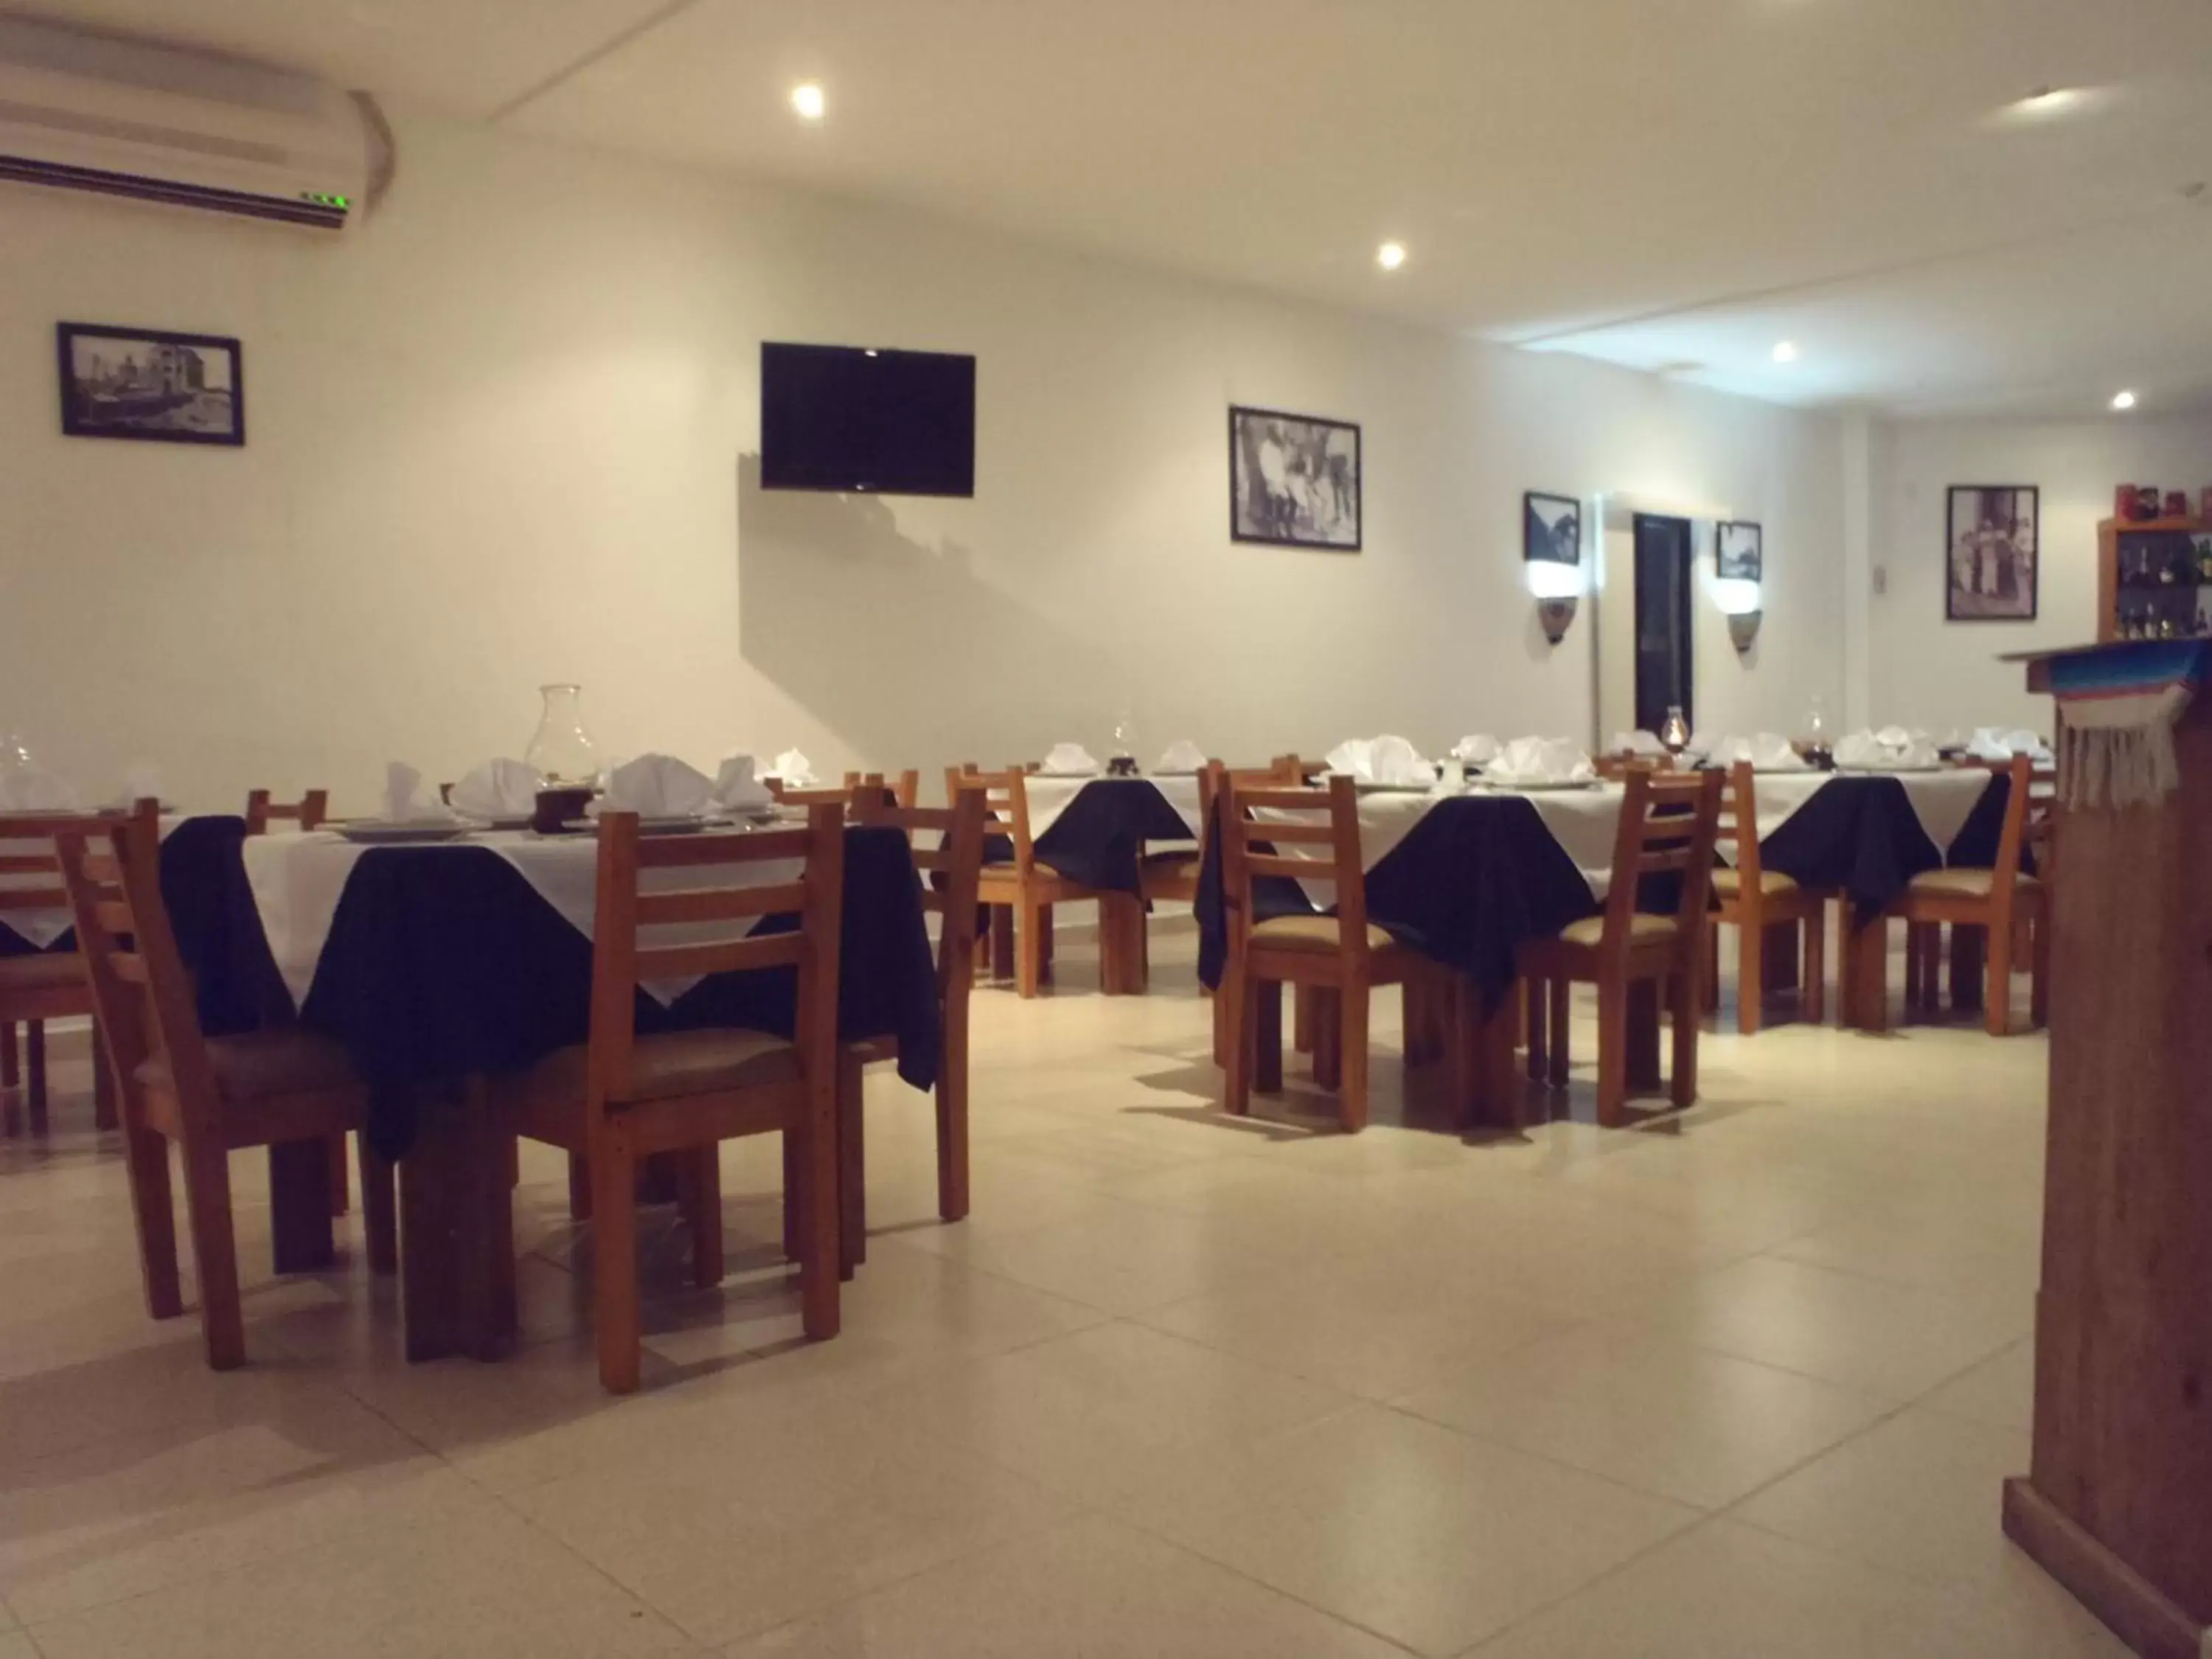 Restaurant/Places to Eat in Hacienda de Castilla